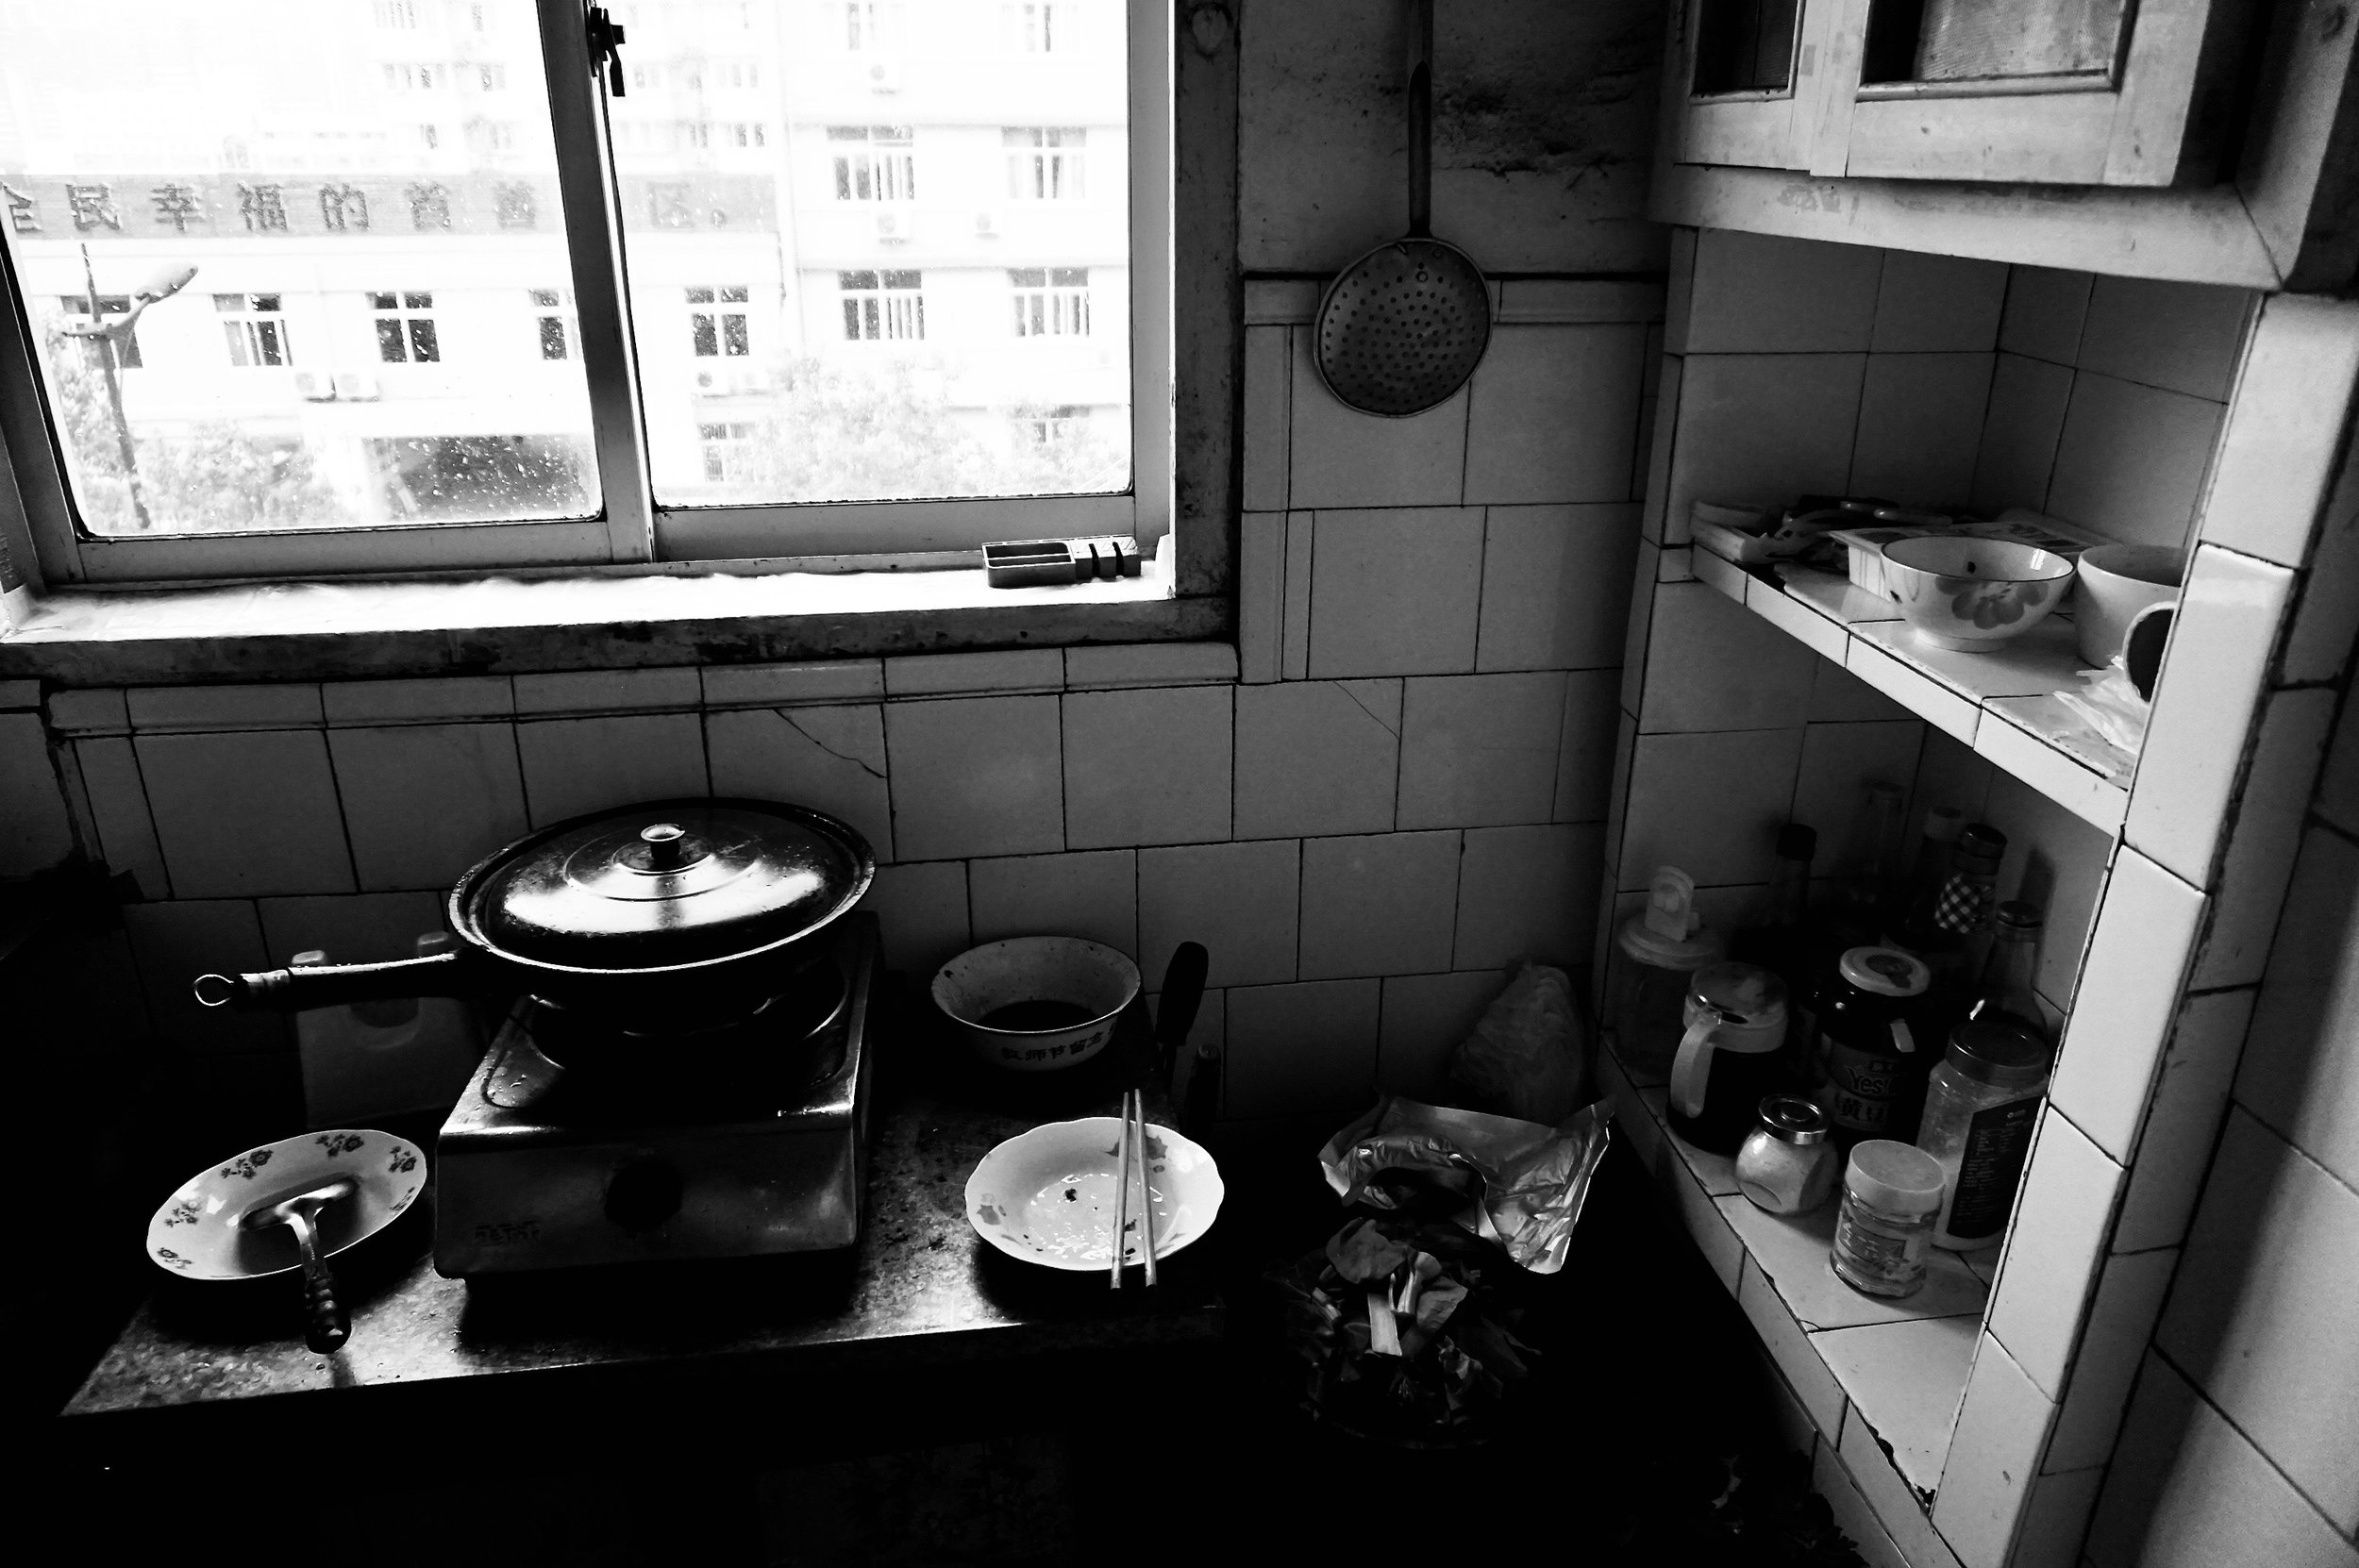 Grandma’s Kitchen 外婆家的厨房